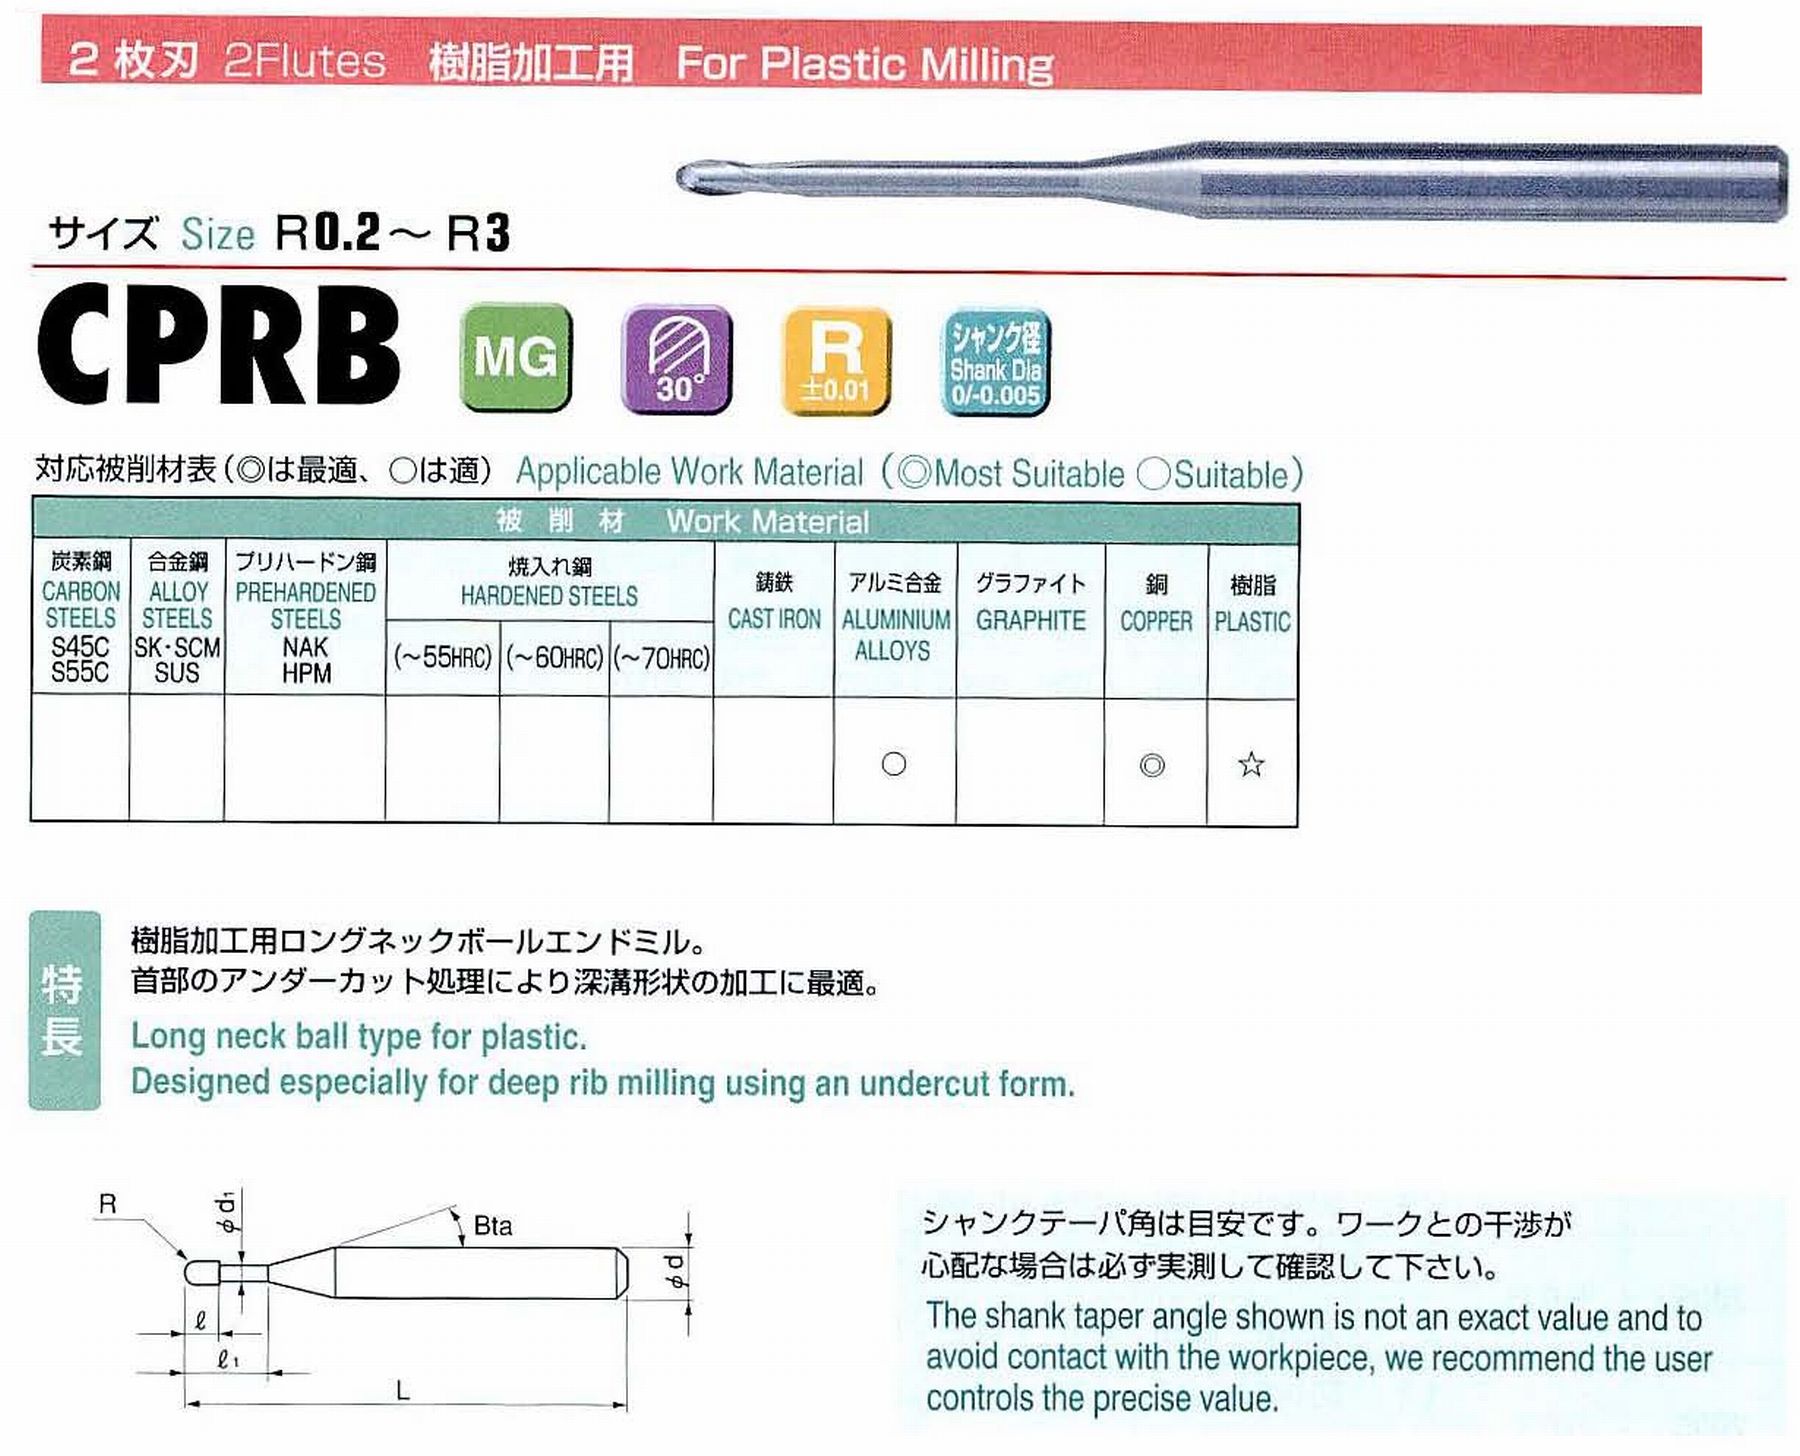 ユニオンツール 2枚刃 CPRB2016-20 ボール半径R0.8 有効長20 刃長1.5 首径1.5 シャンクテーパ角11° 全長55 シャンク径4